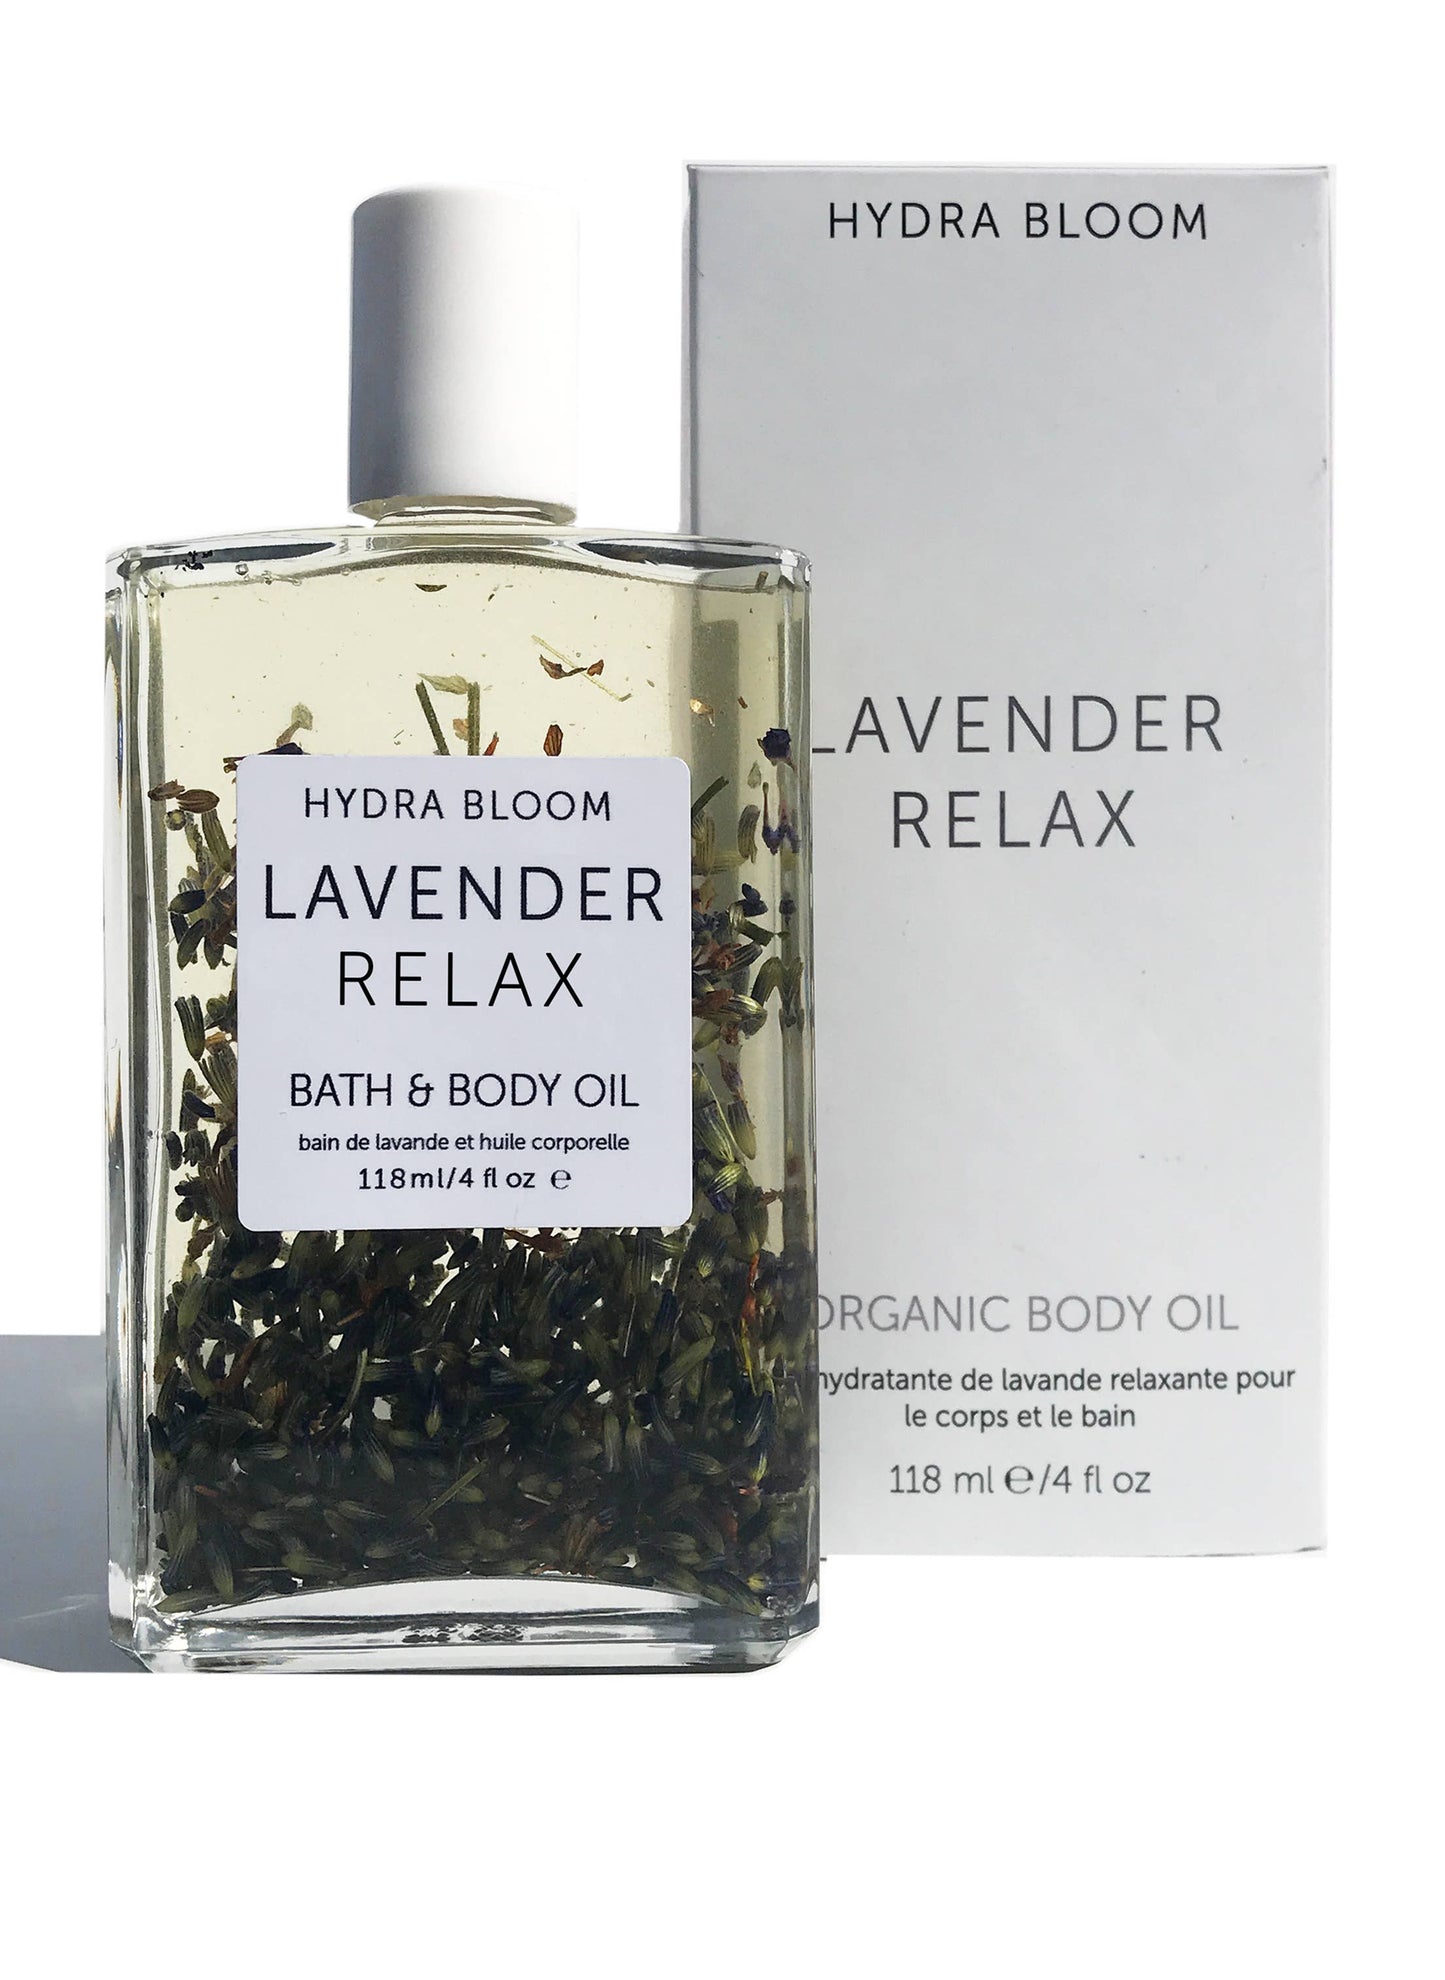 Hydra Bloom Lavender Relax Bath & Body Oil Organic